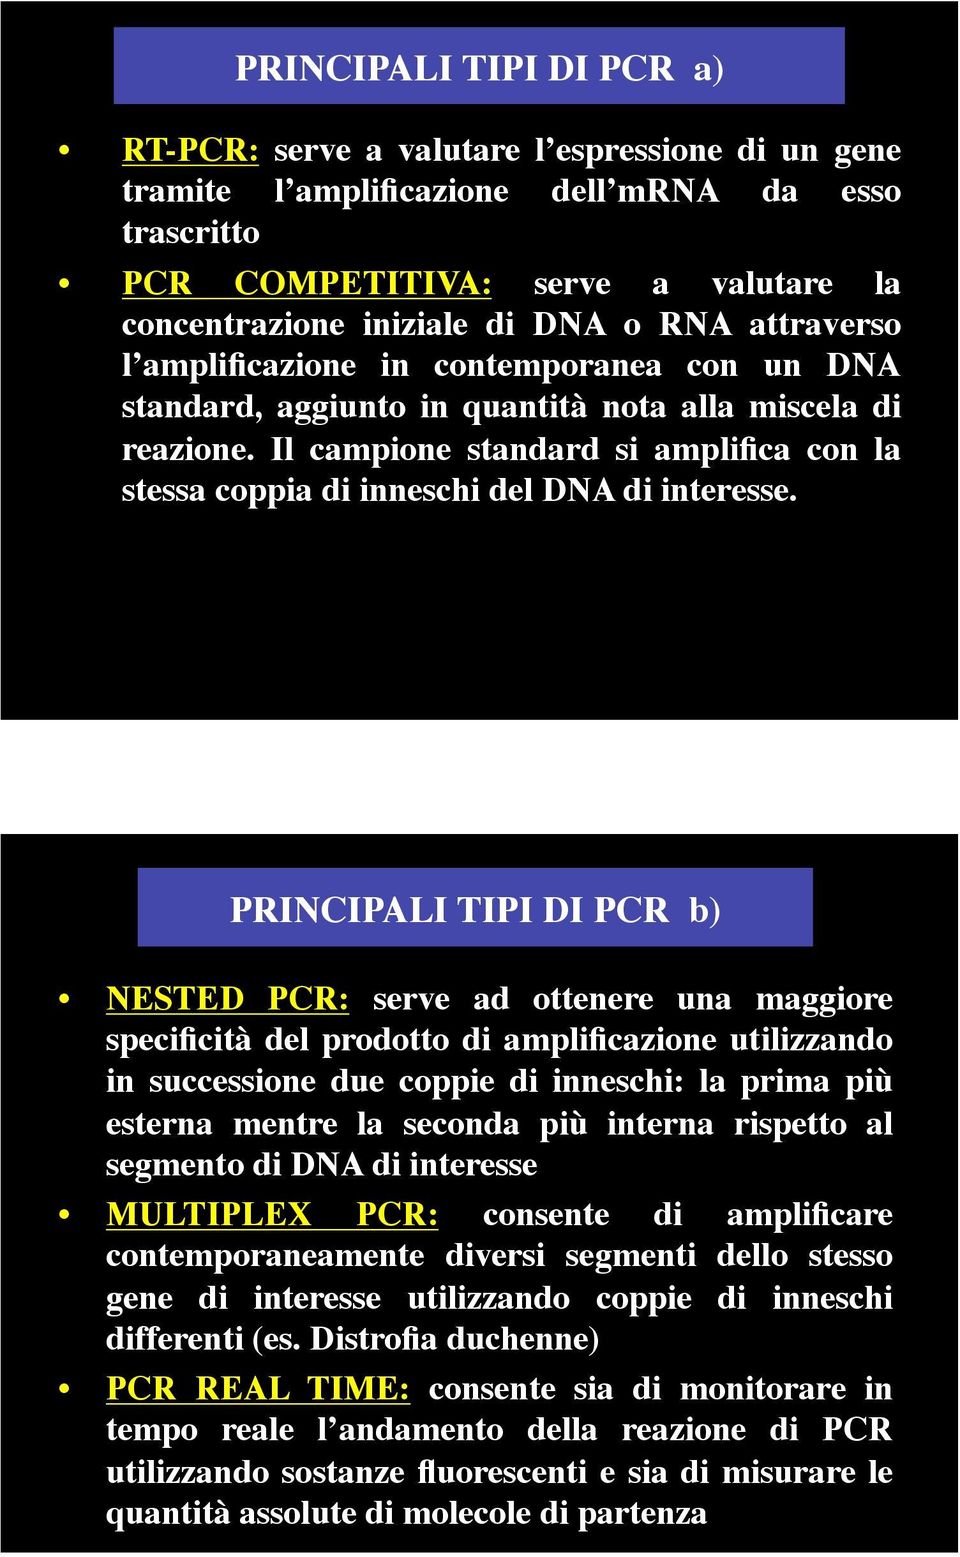 Il campione standard si amplifica con la stessa coppia di inneschi del DNA di interesse.